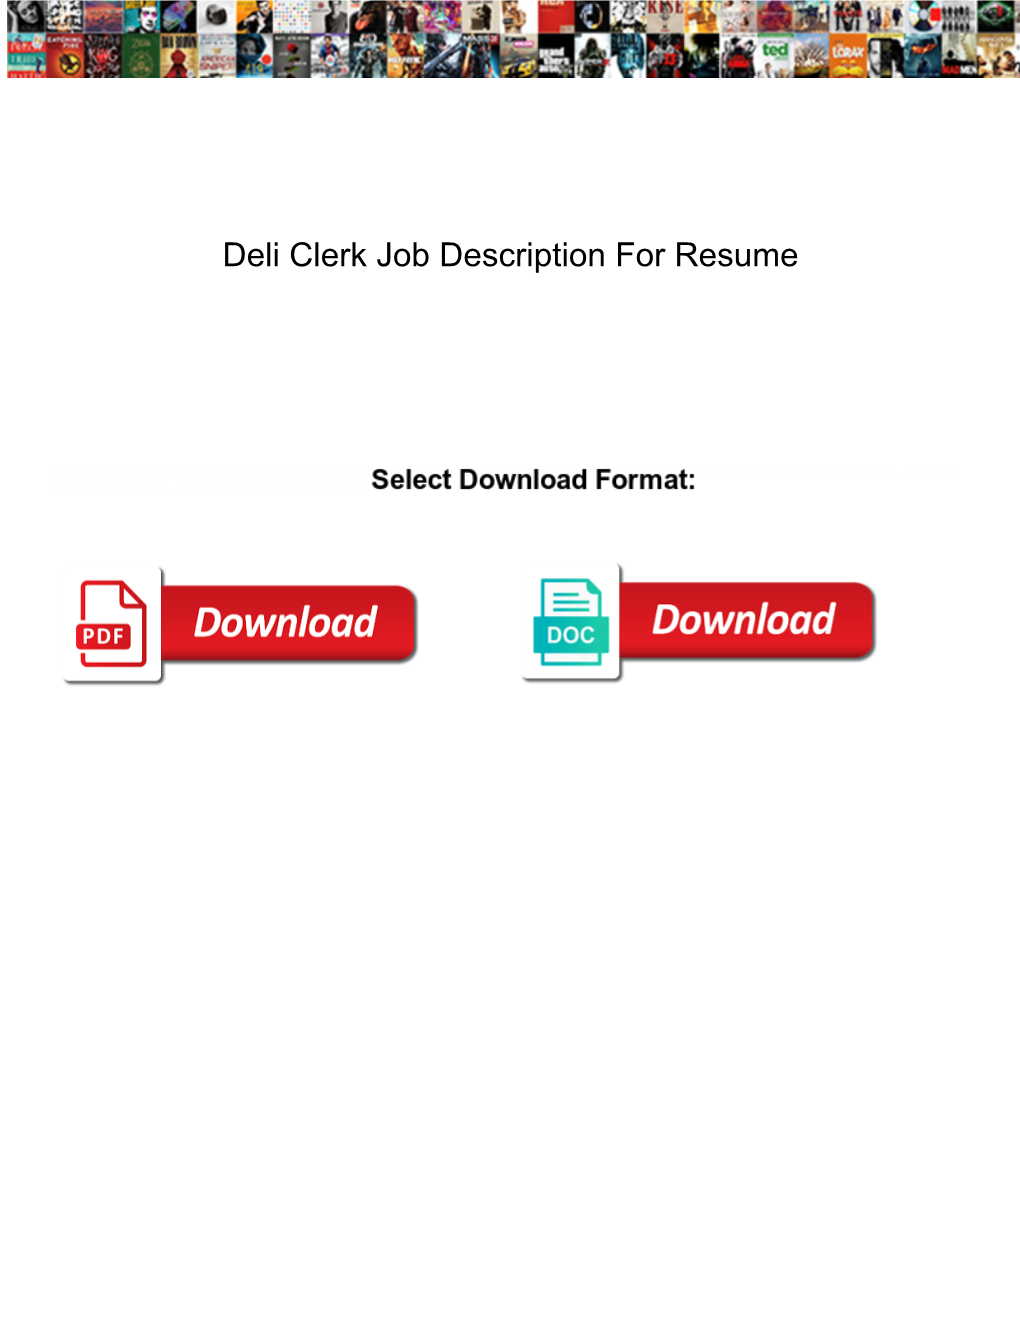 Deli Clerk Job Description for Resume